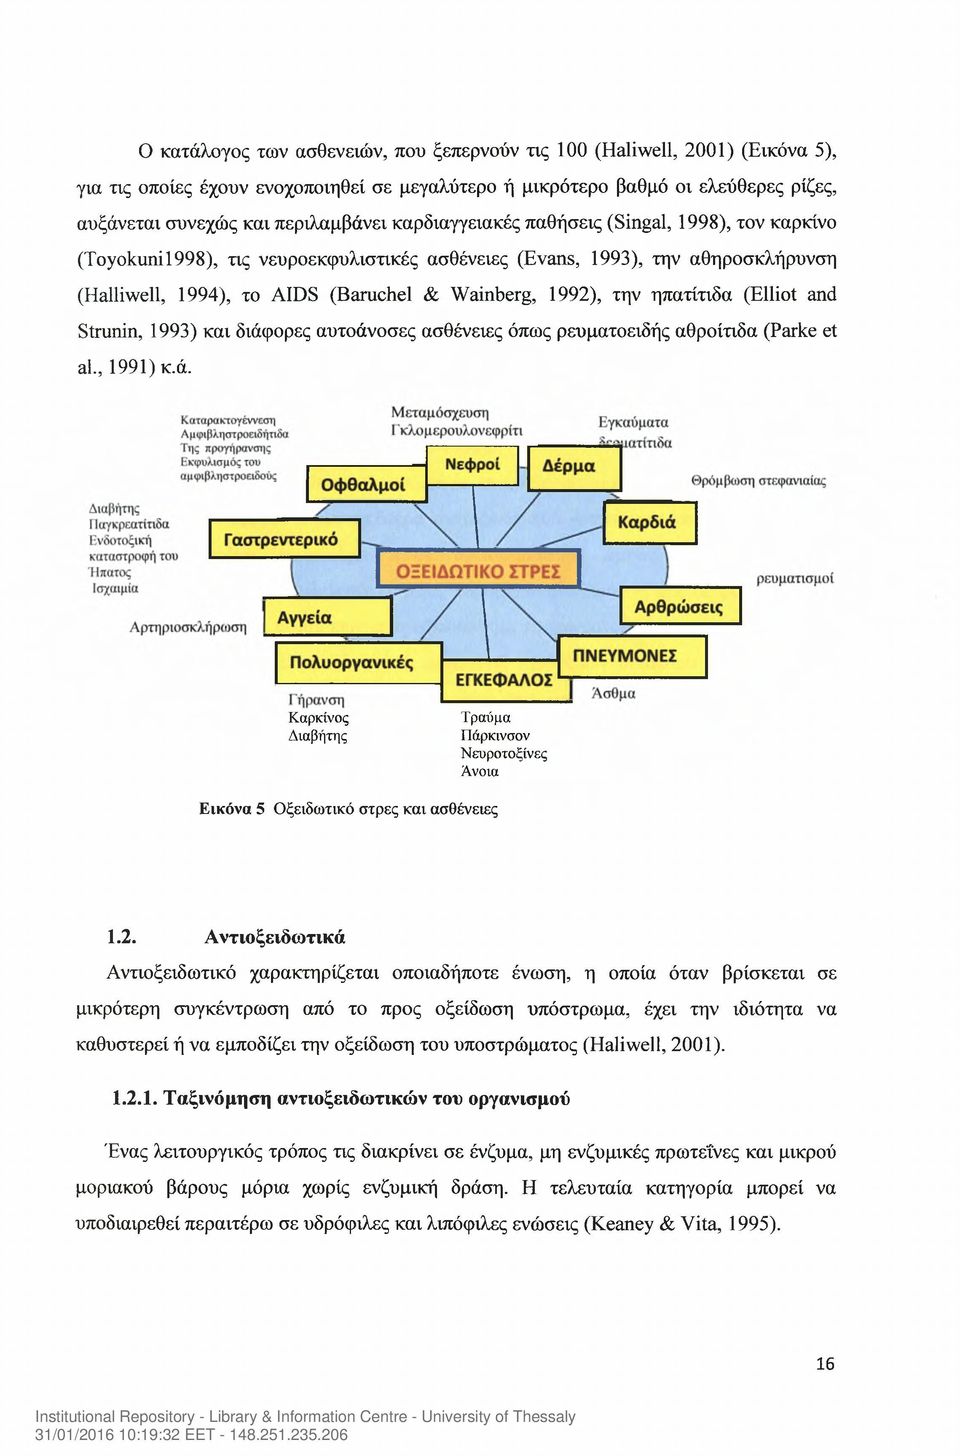 ηπατίτιδα (Elliot and Strunin, 1993) και διάφορες αυτοάνοσες ασθένειες όπως ρευματοειδής αθροίτιδα (Parke et al., 1991) κ.ά. Καρκίνος Διαβήτης Τραύμα Πάρκινσον Νεοροτοξίνες Άνοια Εικόνα 5 Οξειδωτικό στρες και ασθένειες 1.